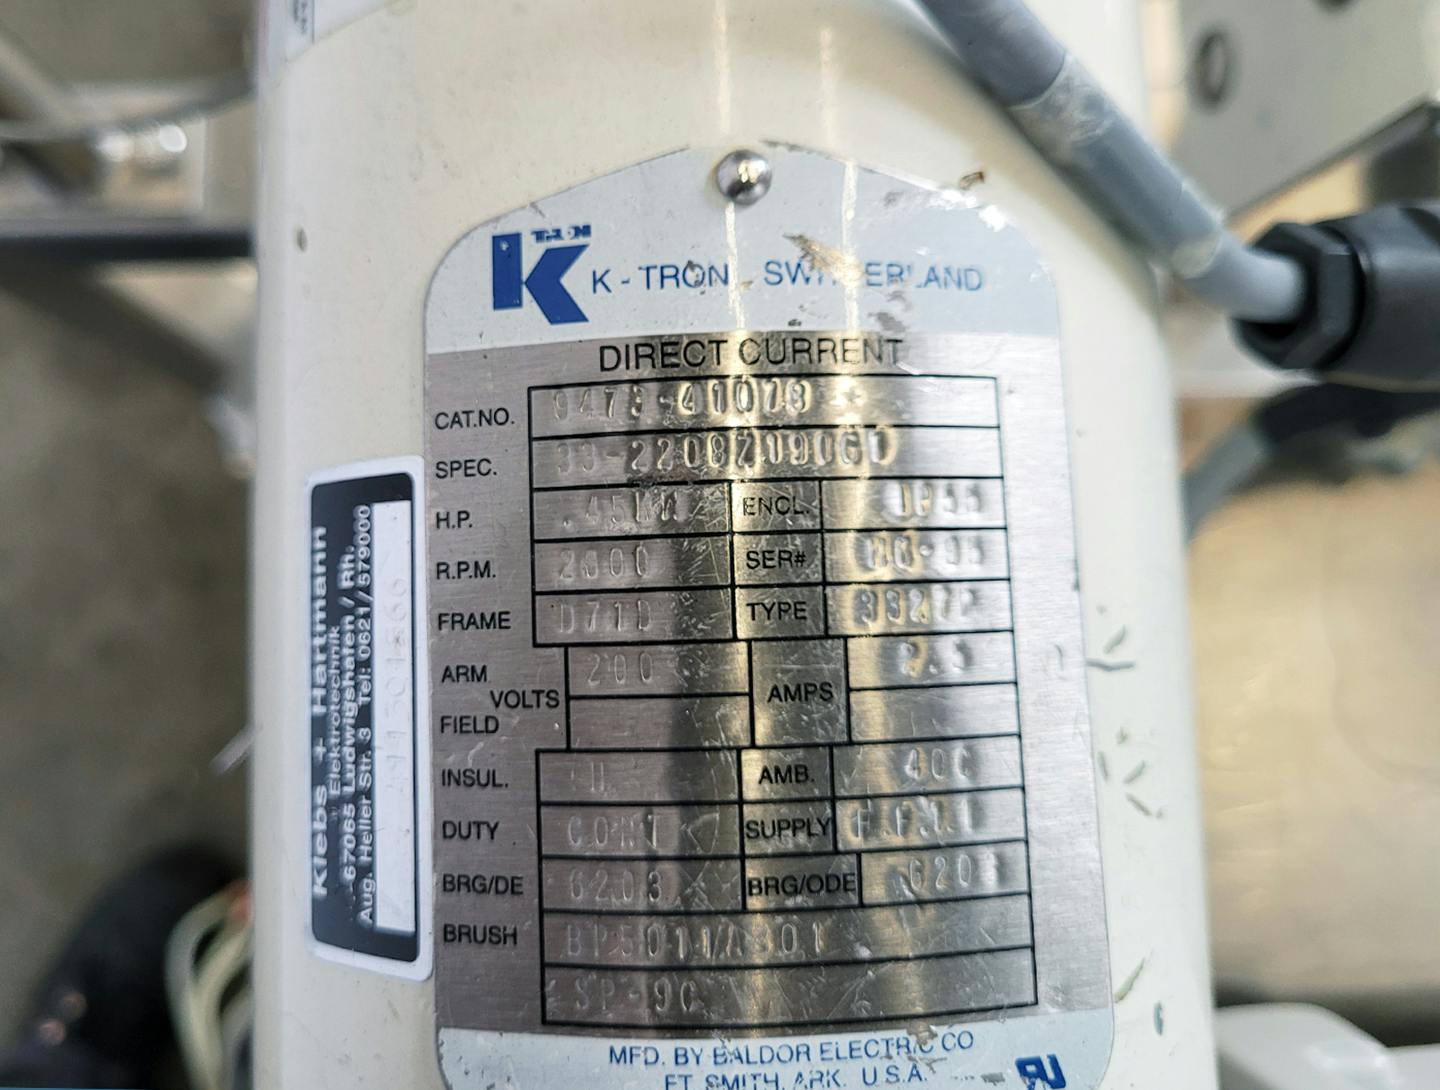 K-tron K2-ML-T35 loss-in-weight feeder - Dosierschnecke - image 12